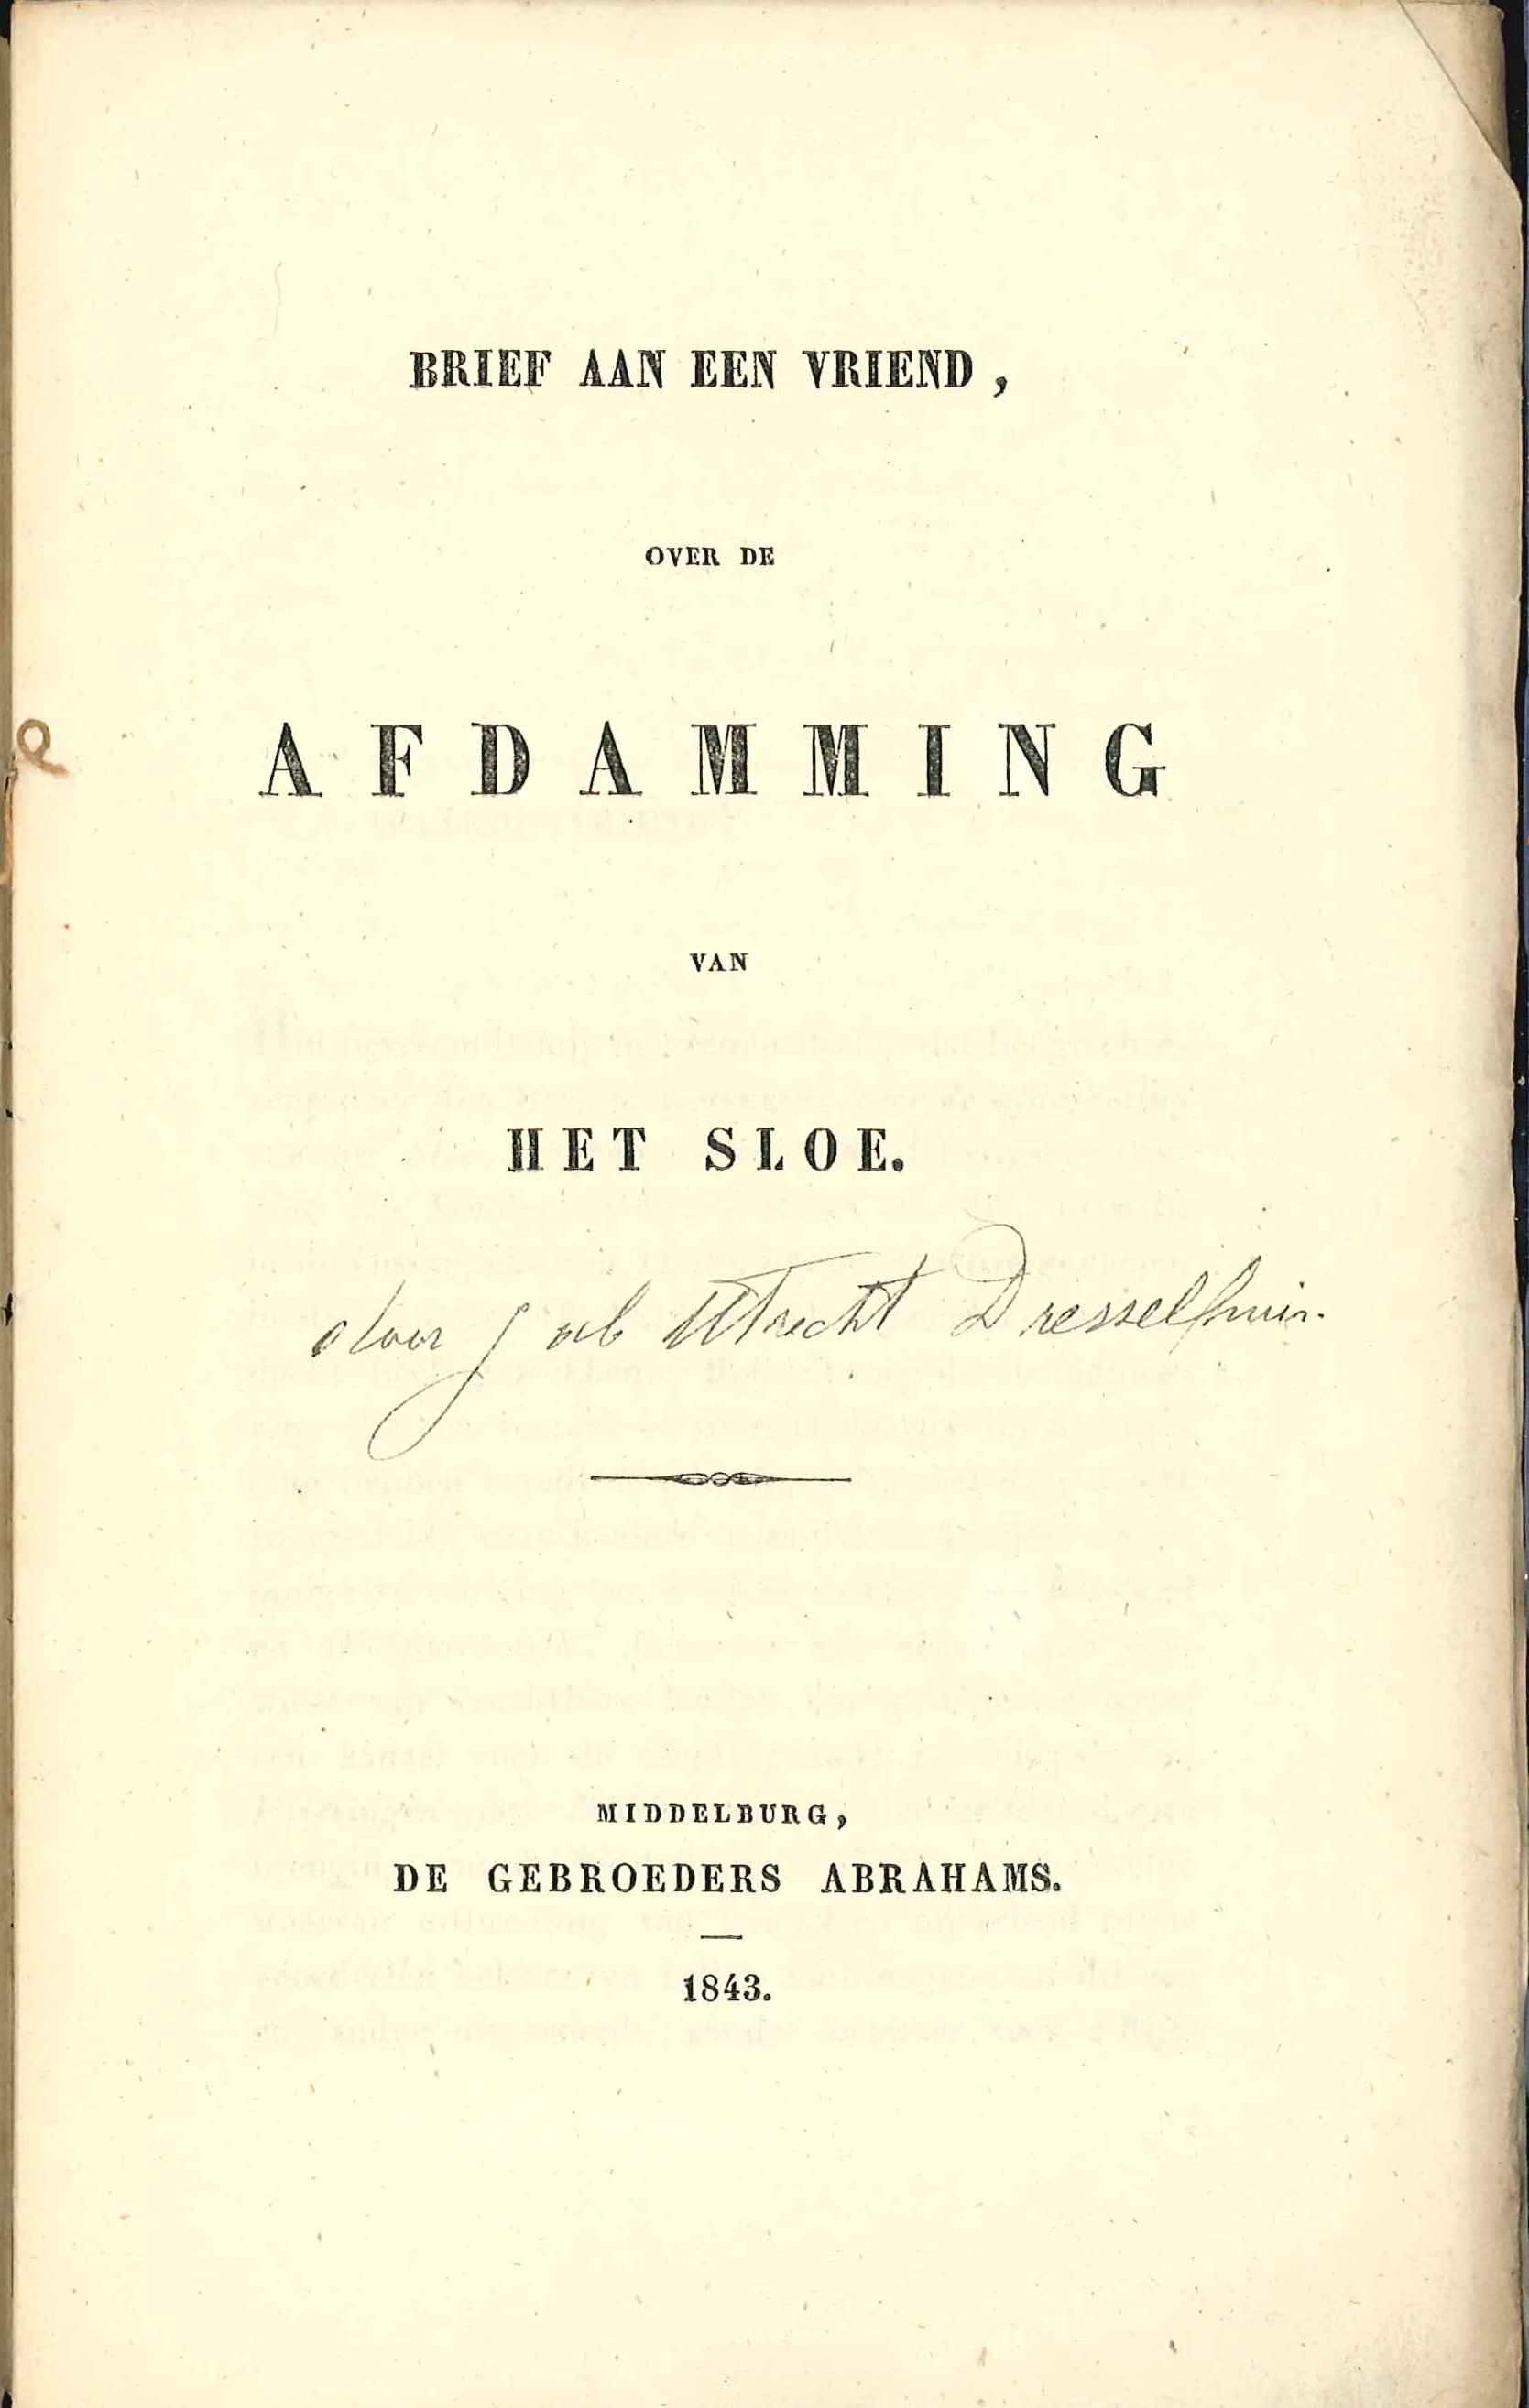 Brochure van J. ab Utrecht Dresselhuis over de afdamming van het Sloe, Middelburg 1843. GAG.HB.